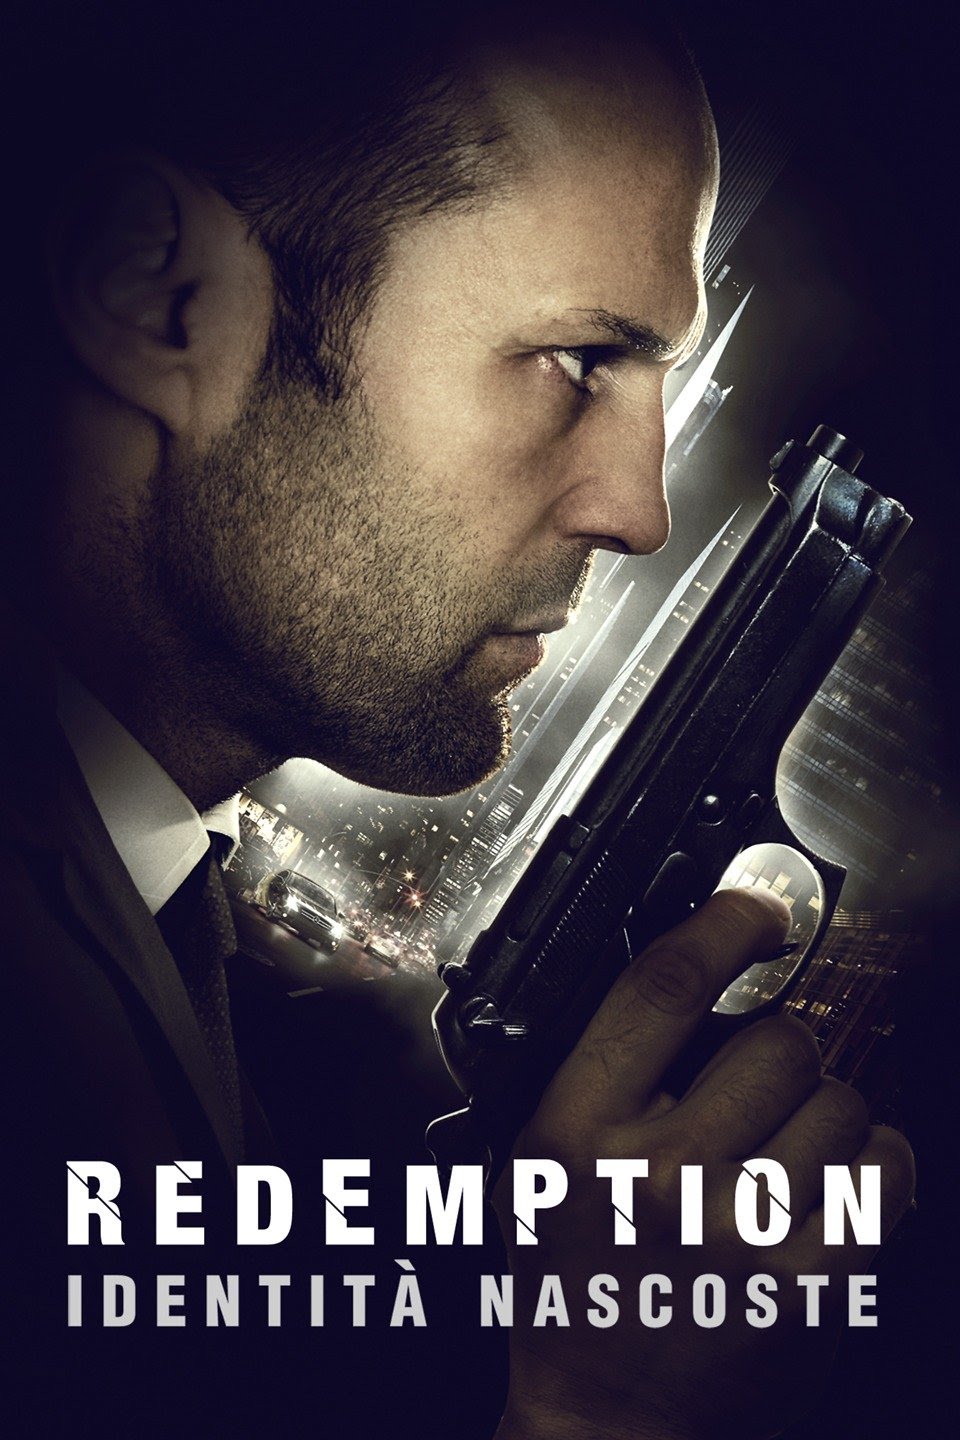 Redemption – Identità nascoste [HD] (2013)